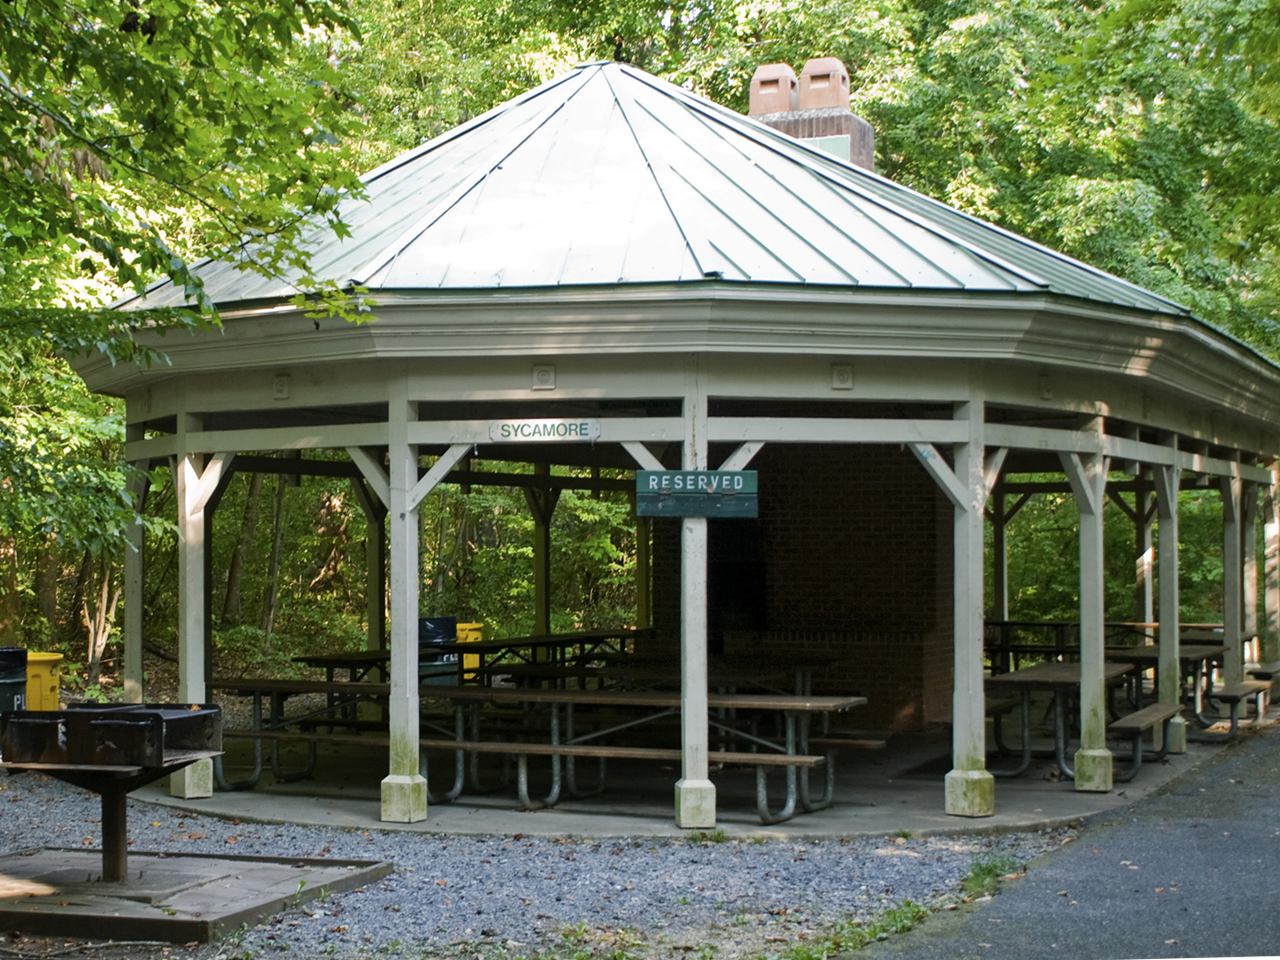 Park Pavilion